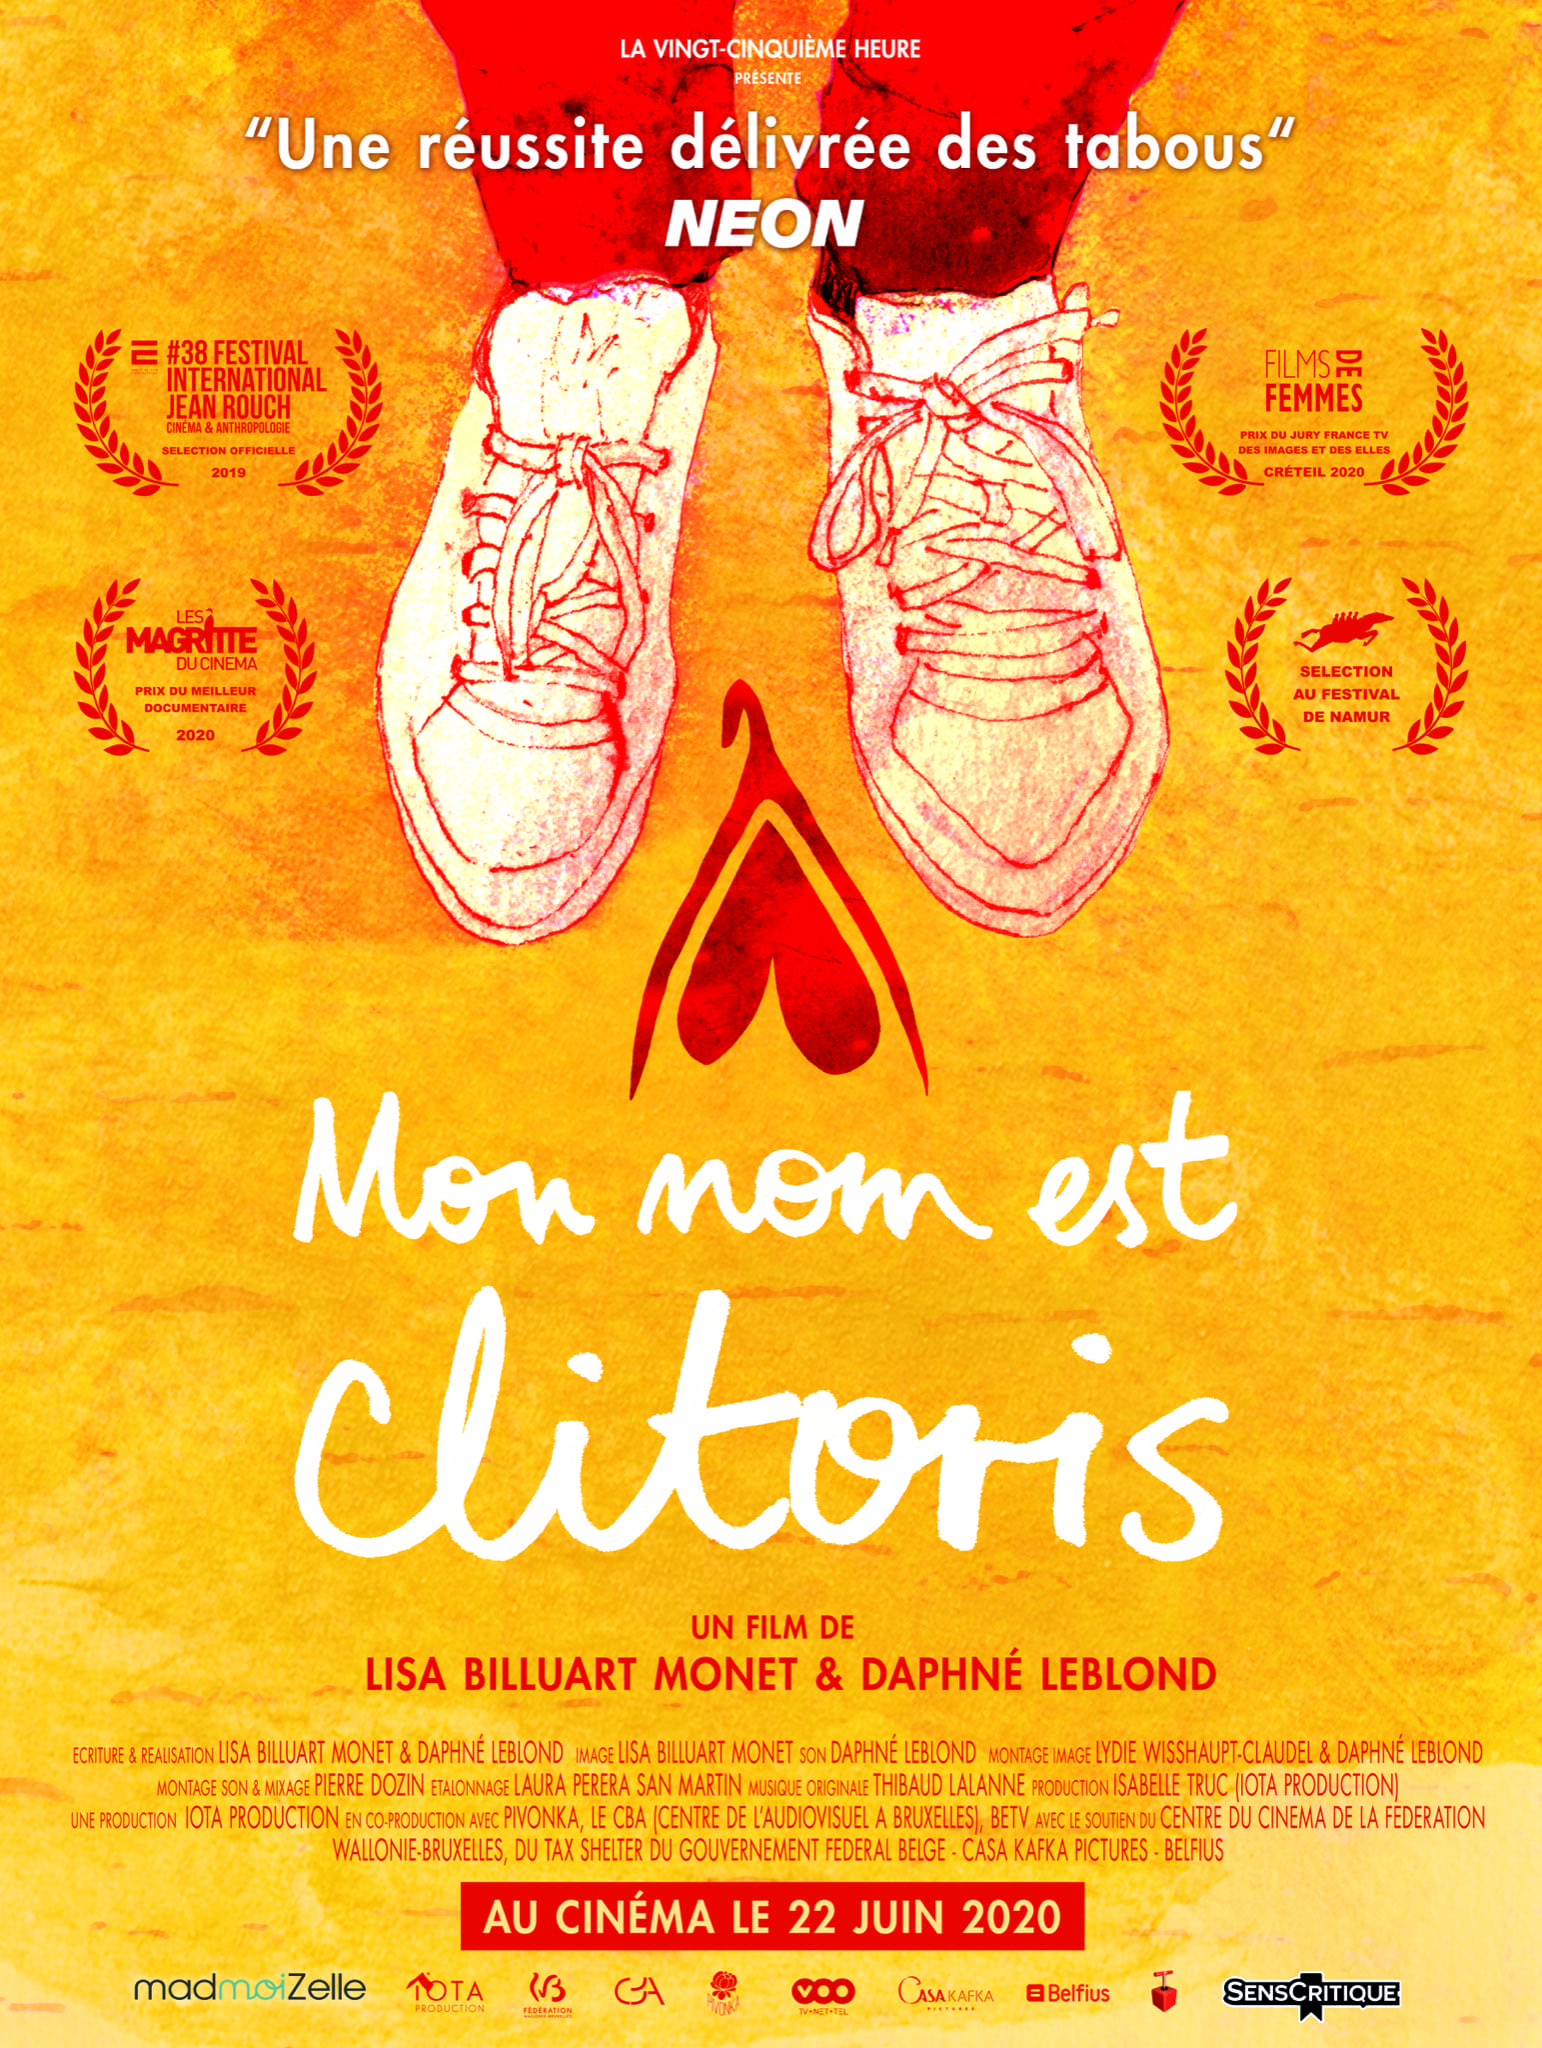 MON NOM EST CLITORIS de de Lisa Billuart-Monet et Daphné Leblond Affiche film cinéma